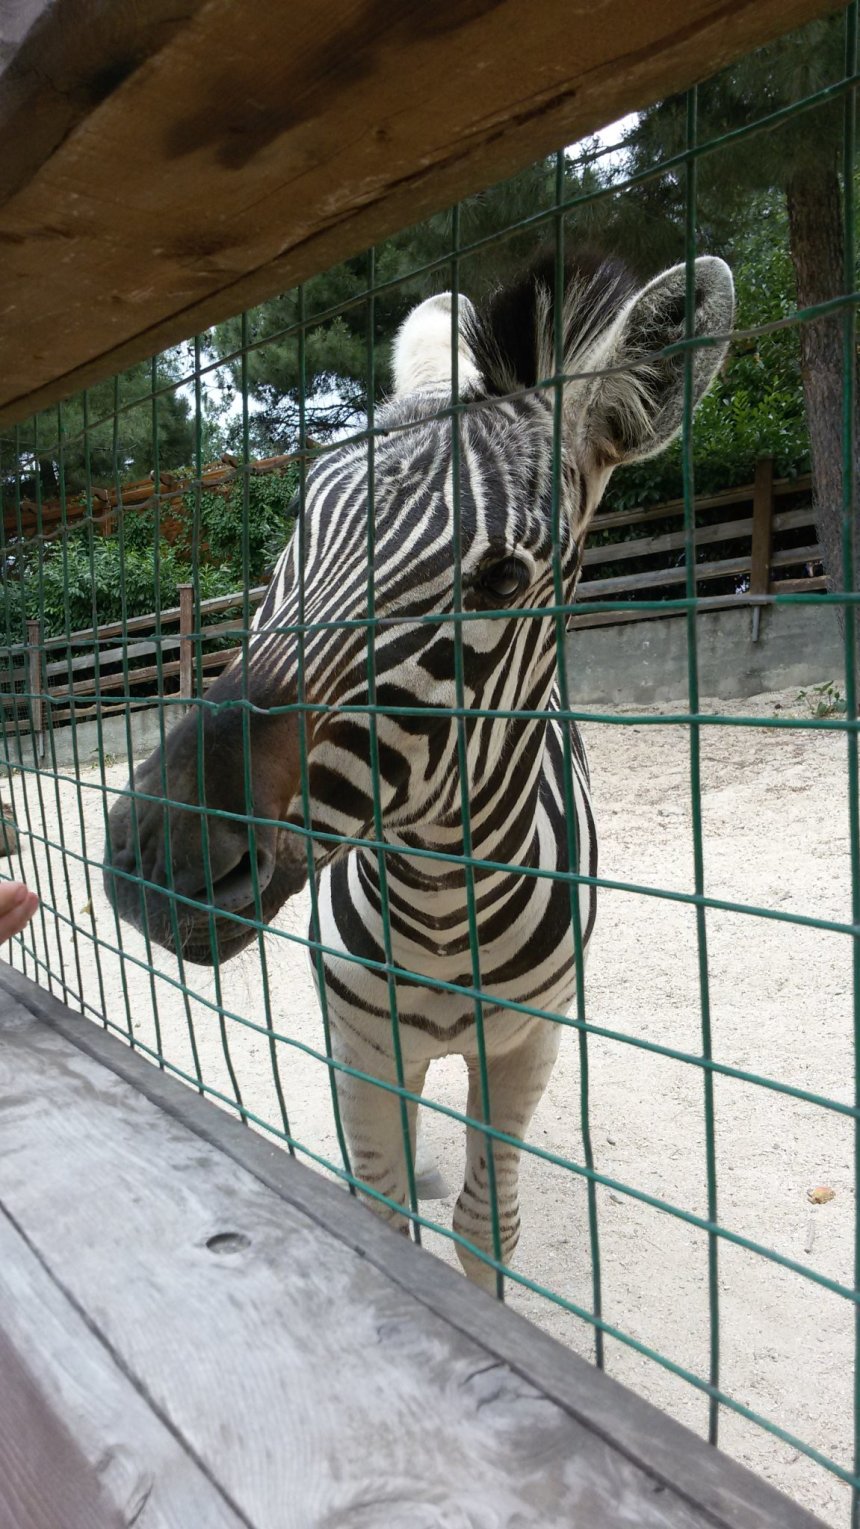 Отчёт по занятию Идём в контактный зоопарк! в Wachanga!